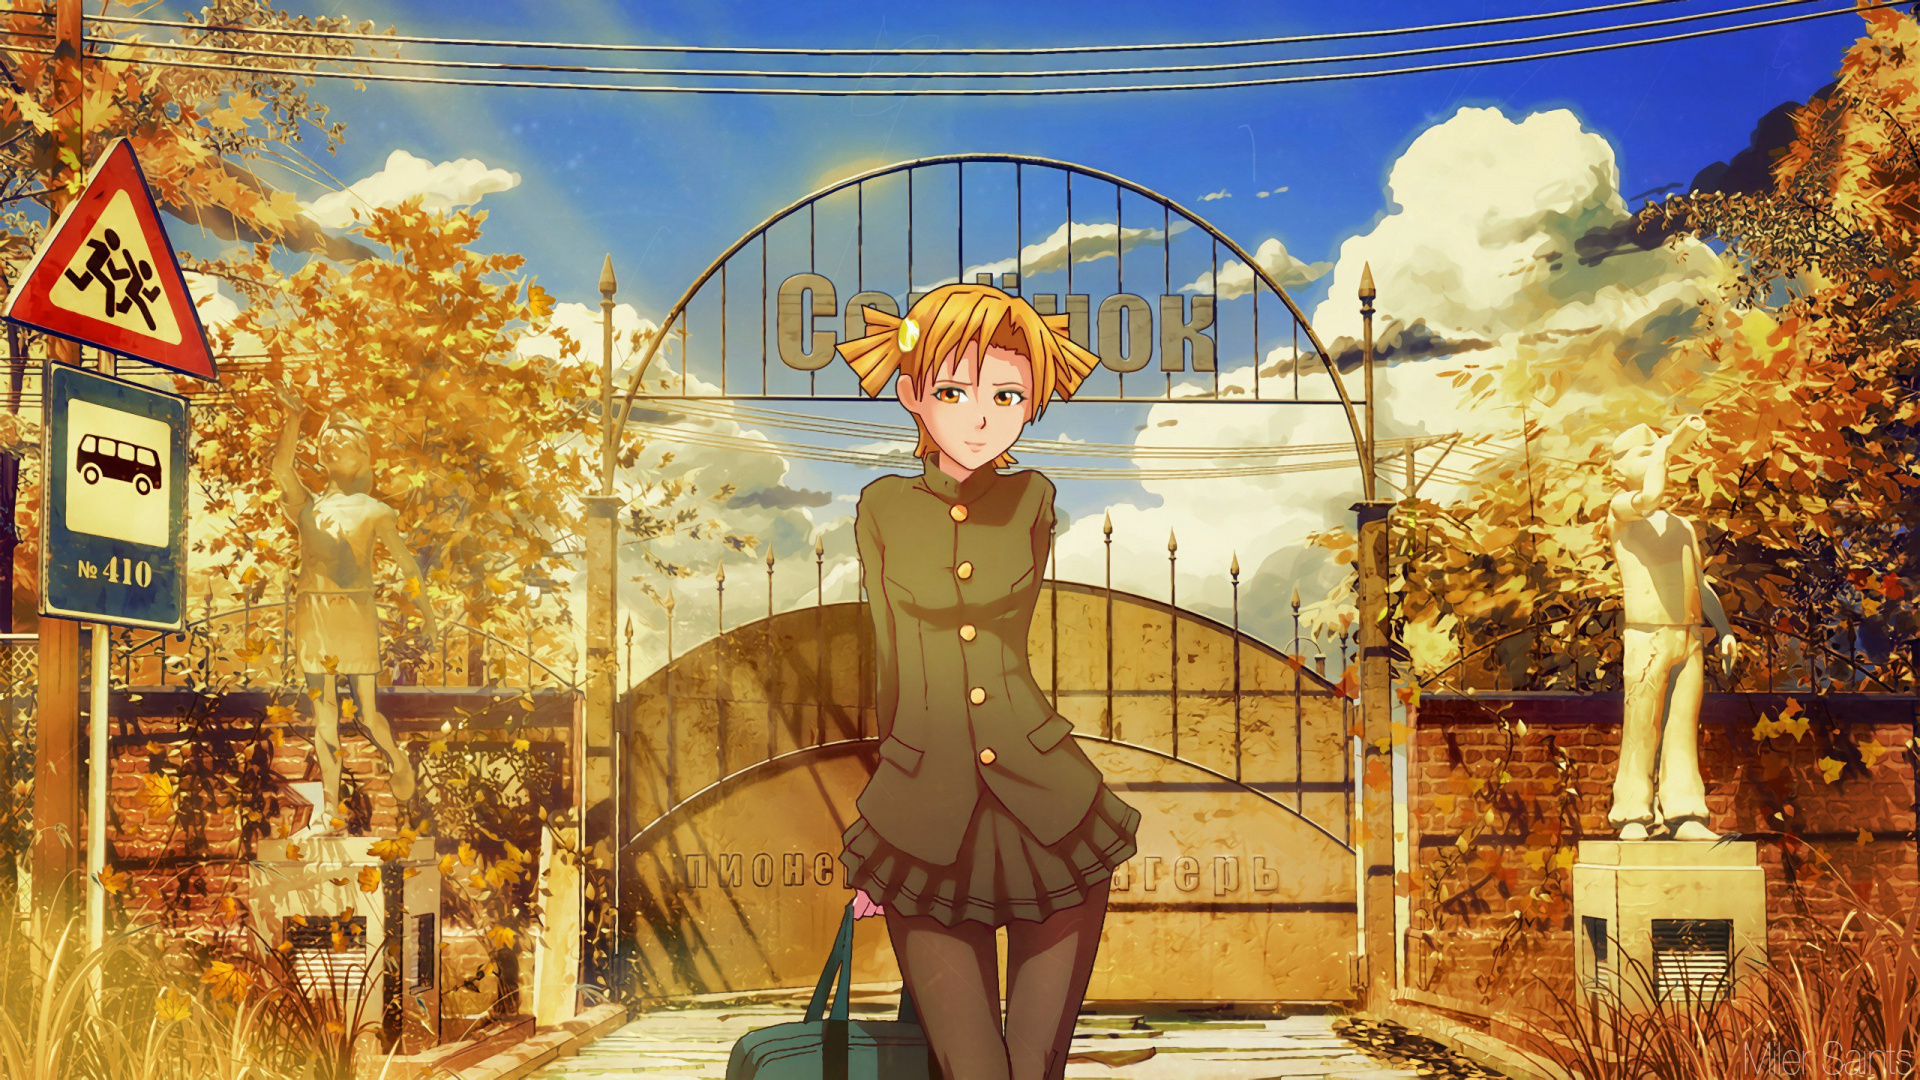 Chica en Vestido Marrón Personaje de Anime. Wallpaper in 1920x1080 Resolution